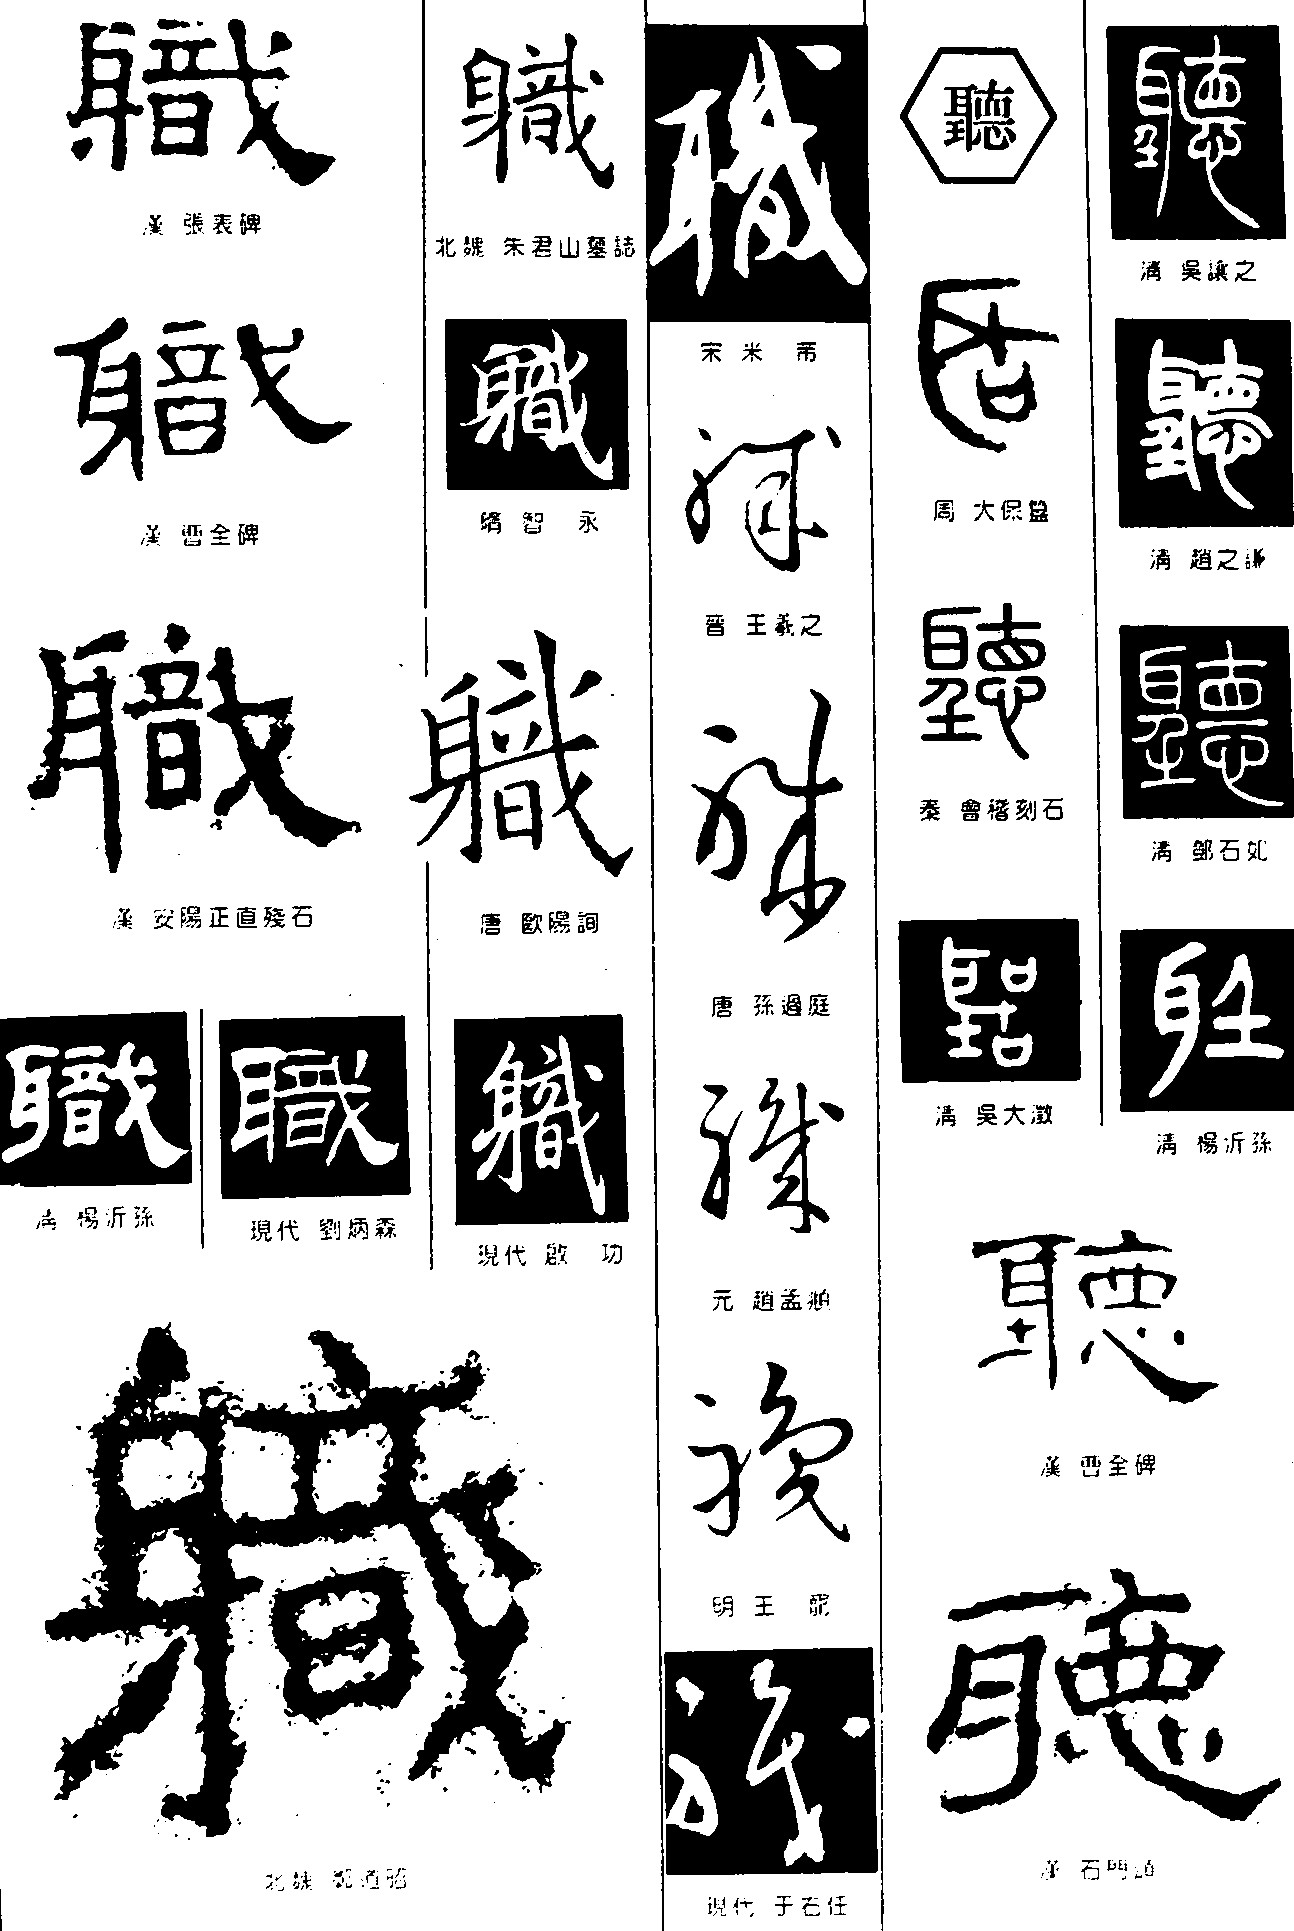 职听_书法字体_字体设计作品-中国字体设计网_ziti.